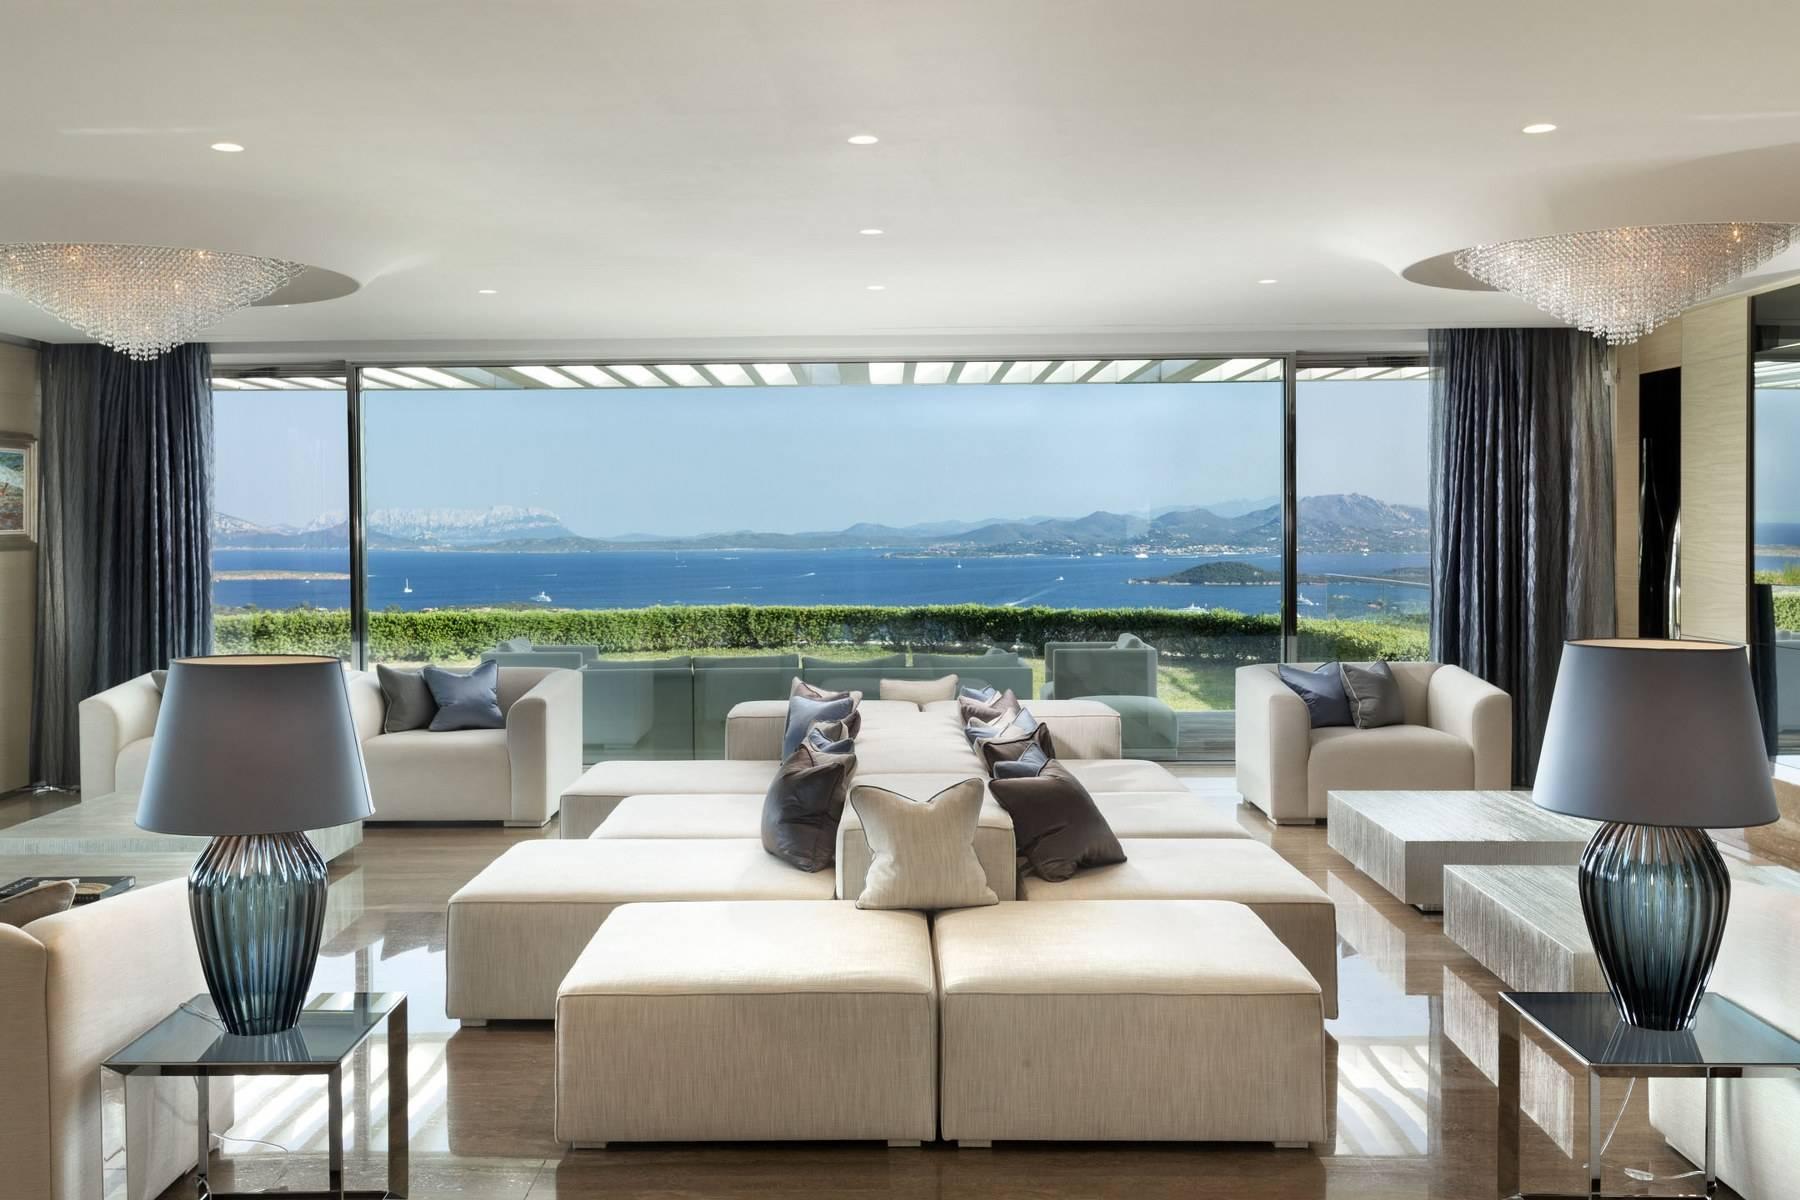 Glamour - Prestigious and elegant villa located in the heart of the Costa Smeralda - 3